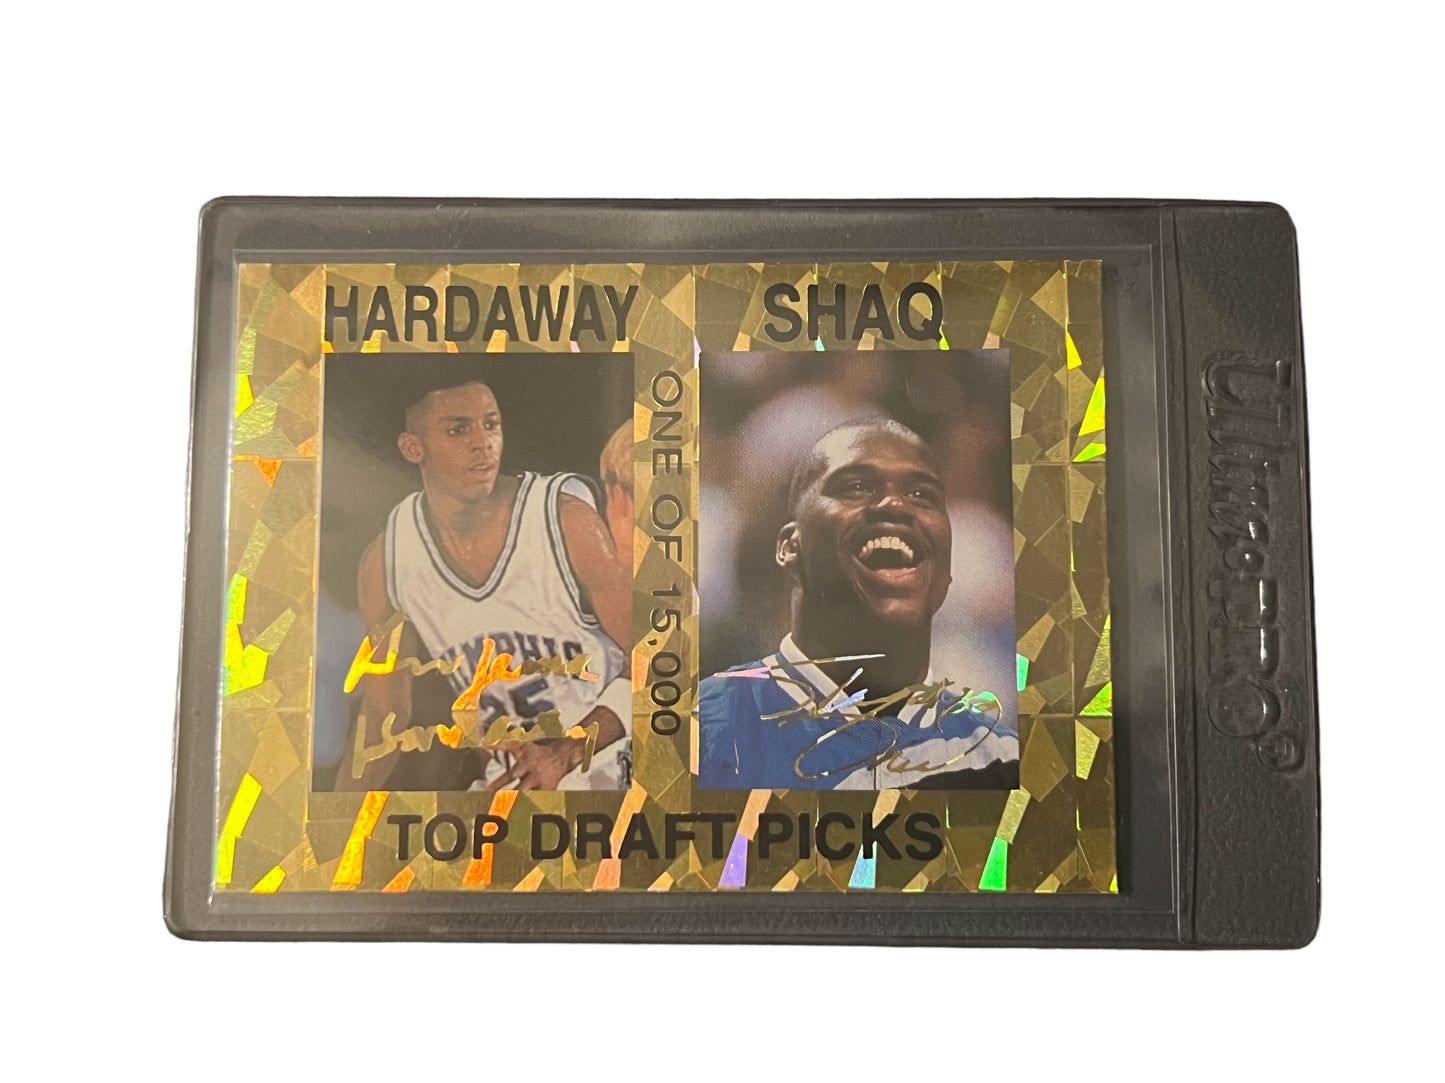 1993-94 Sports Stars USA Hardaway/Shaq Top Draft Picks One Of 15,000